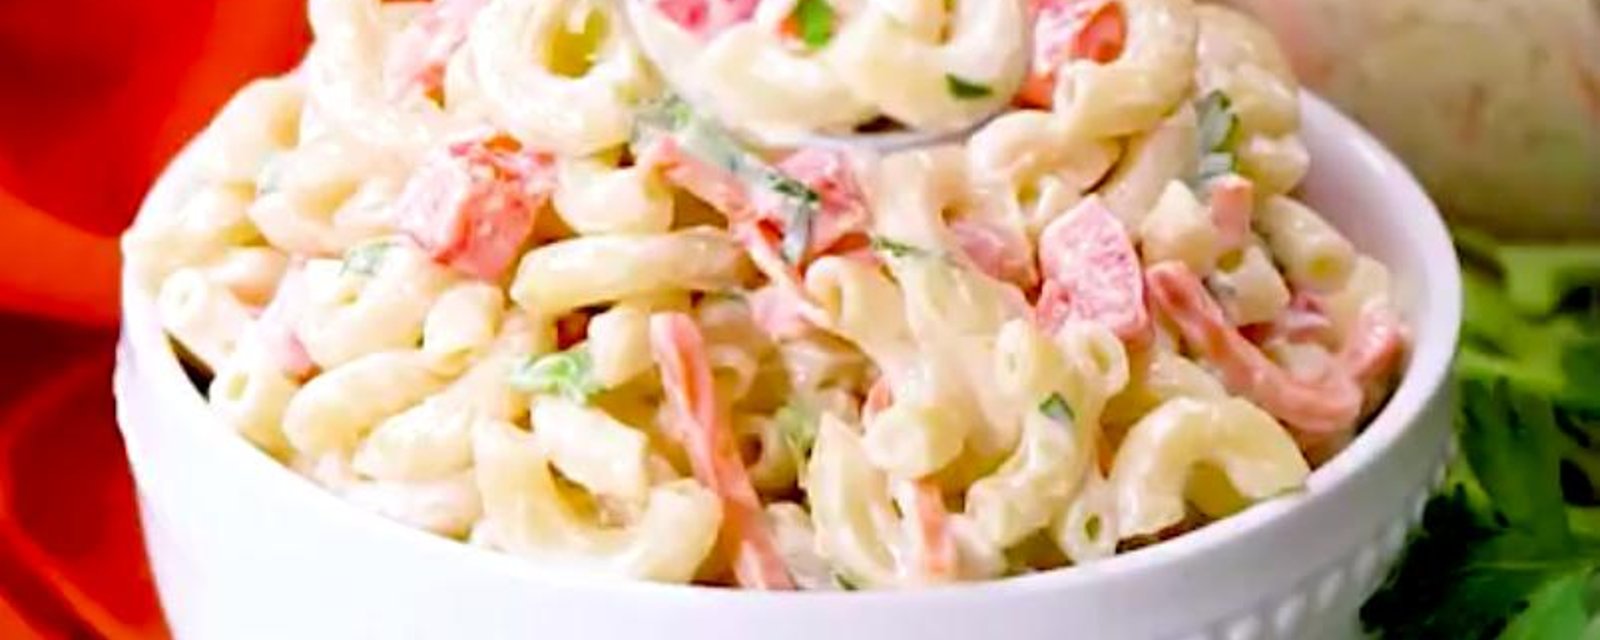 La meilleure salade froide au macaroni que vous aurez mangée!